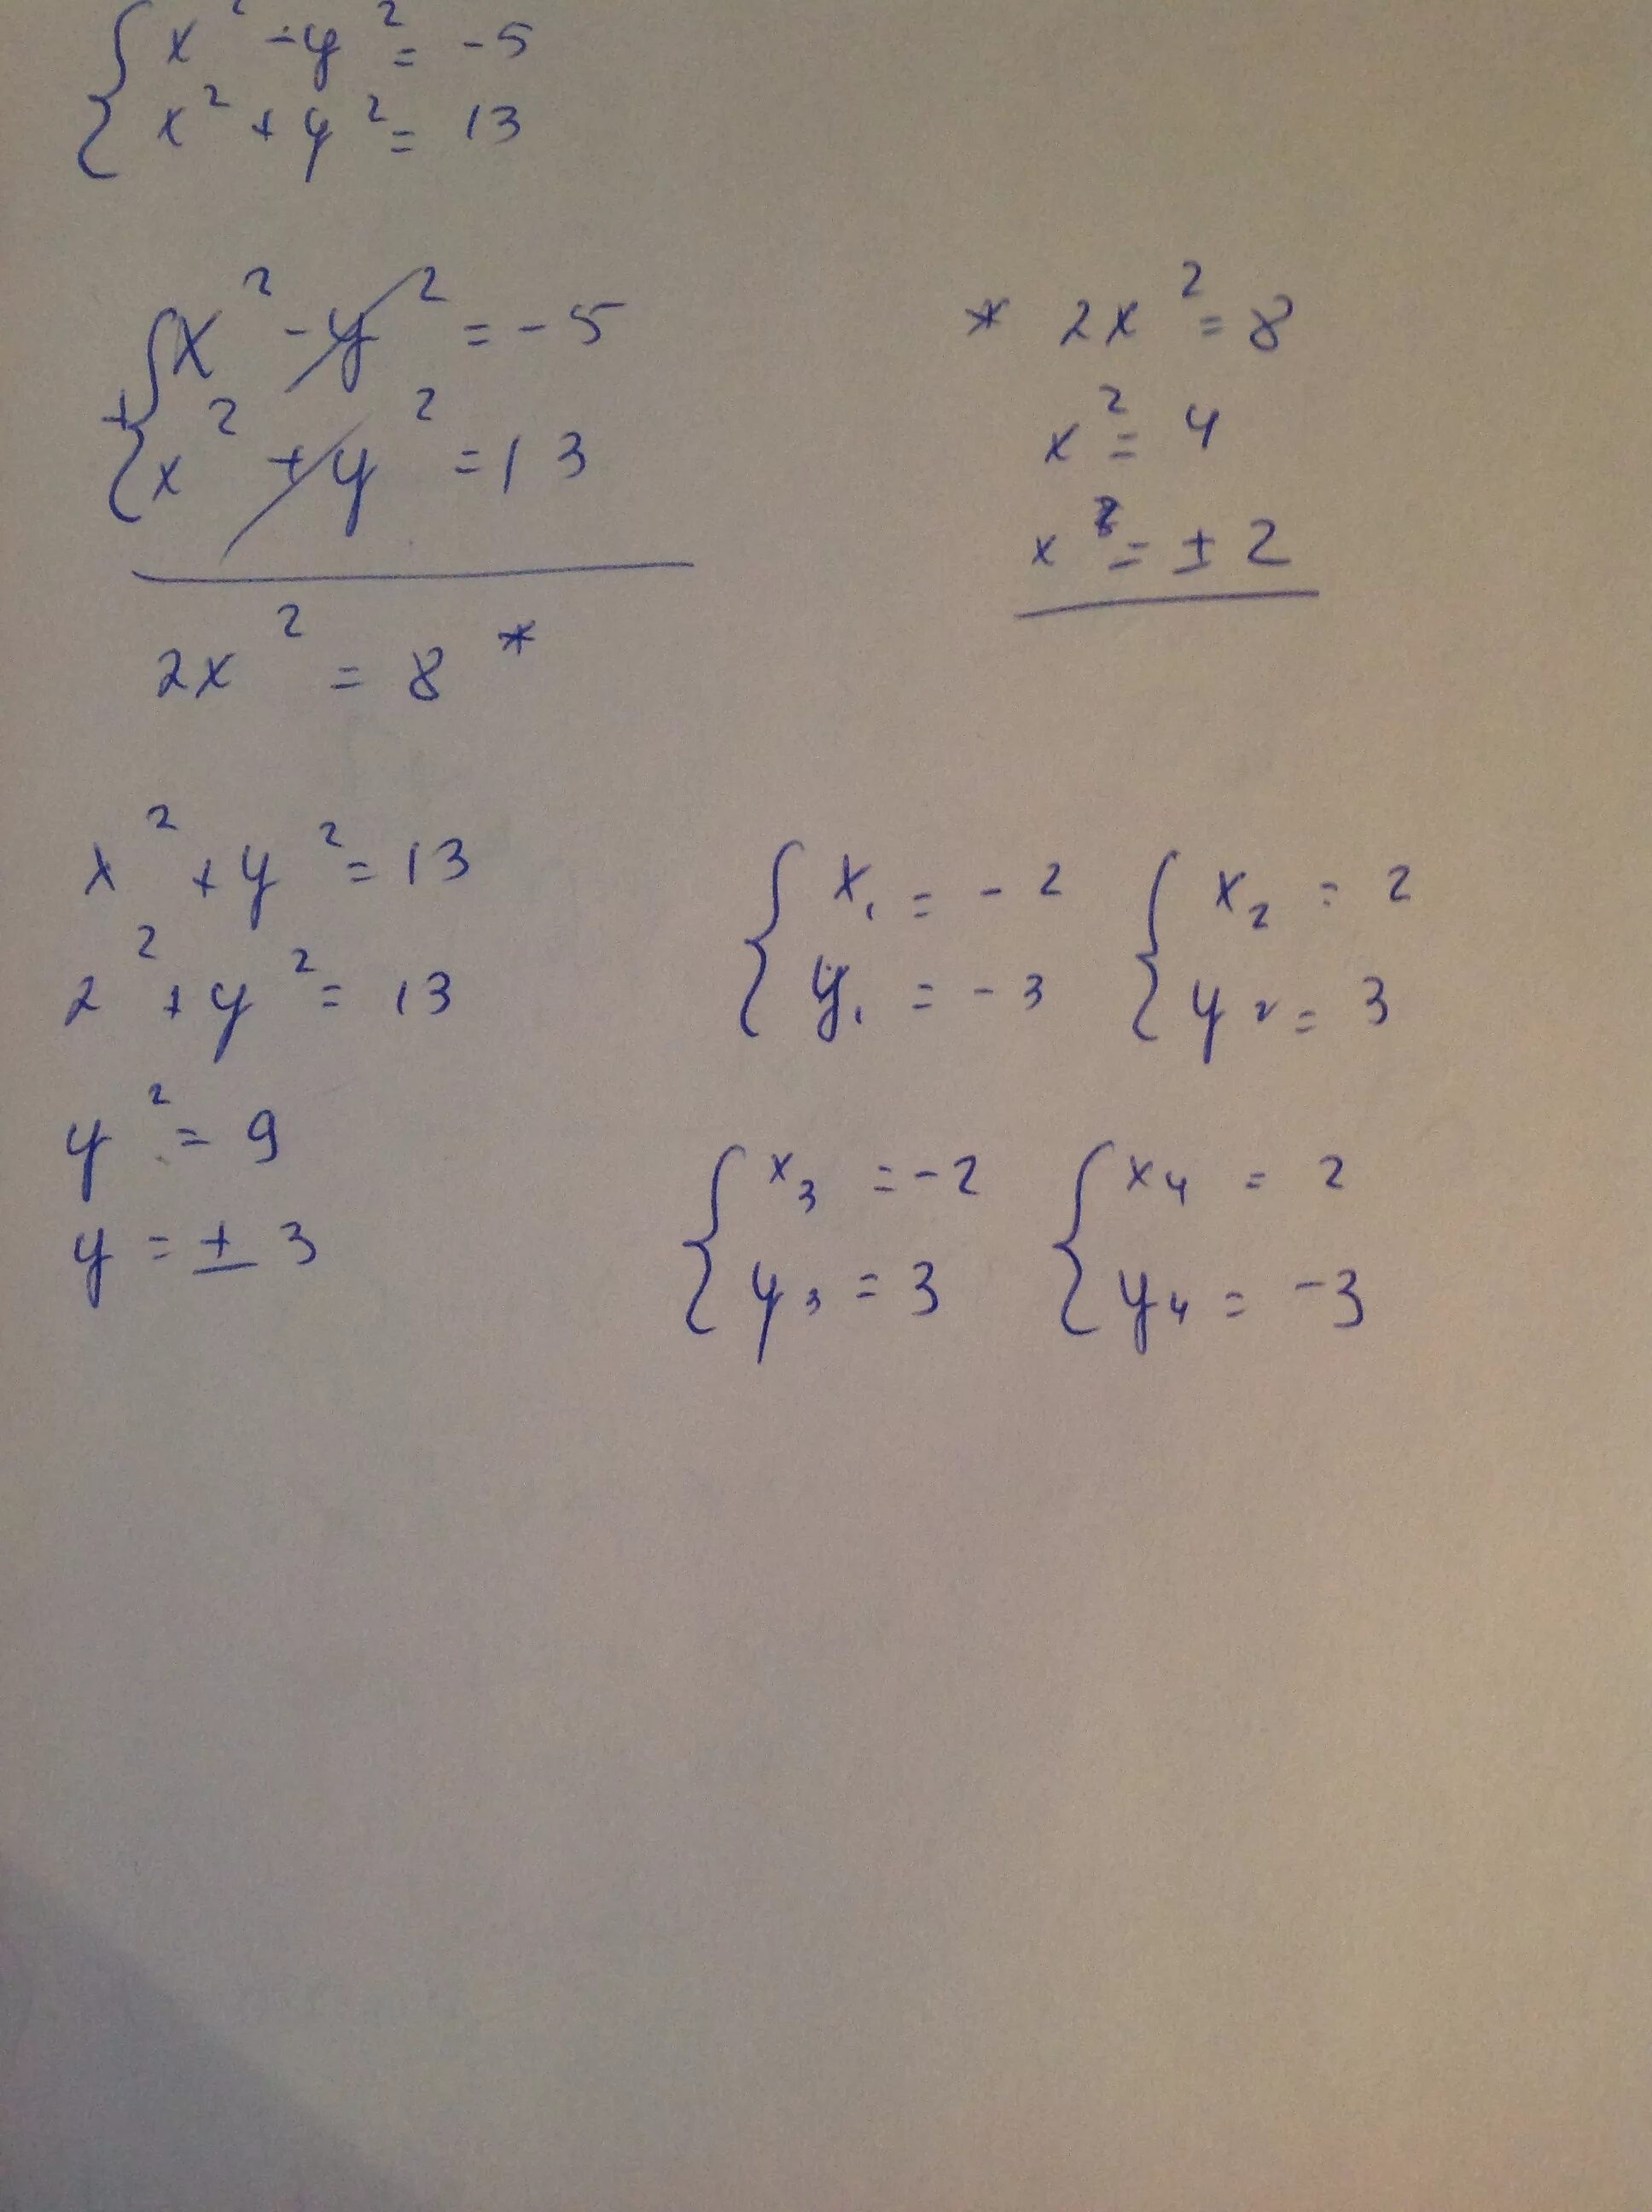 Реши систему уравнений 3х 2у 14. Алгебраическое сложение 3х-у=2, х+у=2. Решите методом алгебраического сложения систему уравнений х-у 4 2х+у 2. Решите систему уравнений методом сложения (х-2у). Решите систему уравнений методом алгебраического сложения 2х-у 3 х+у 6.